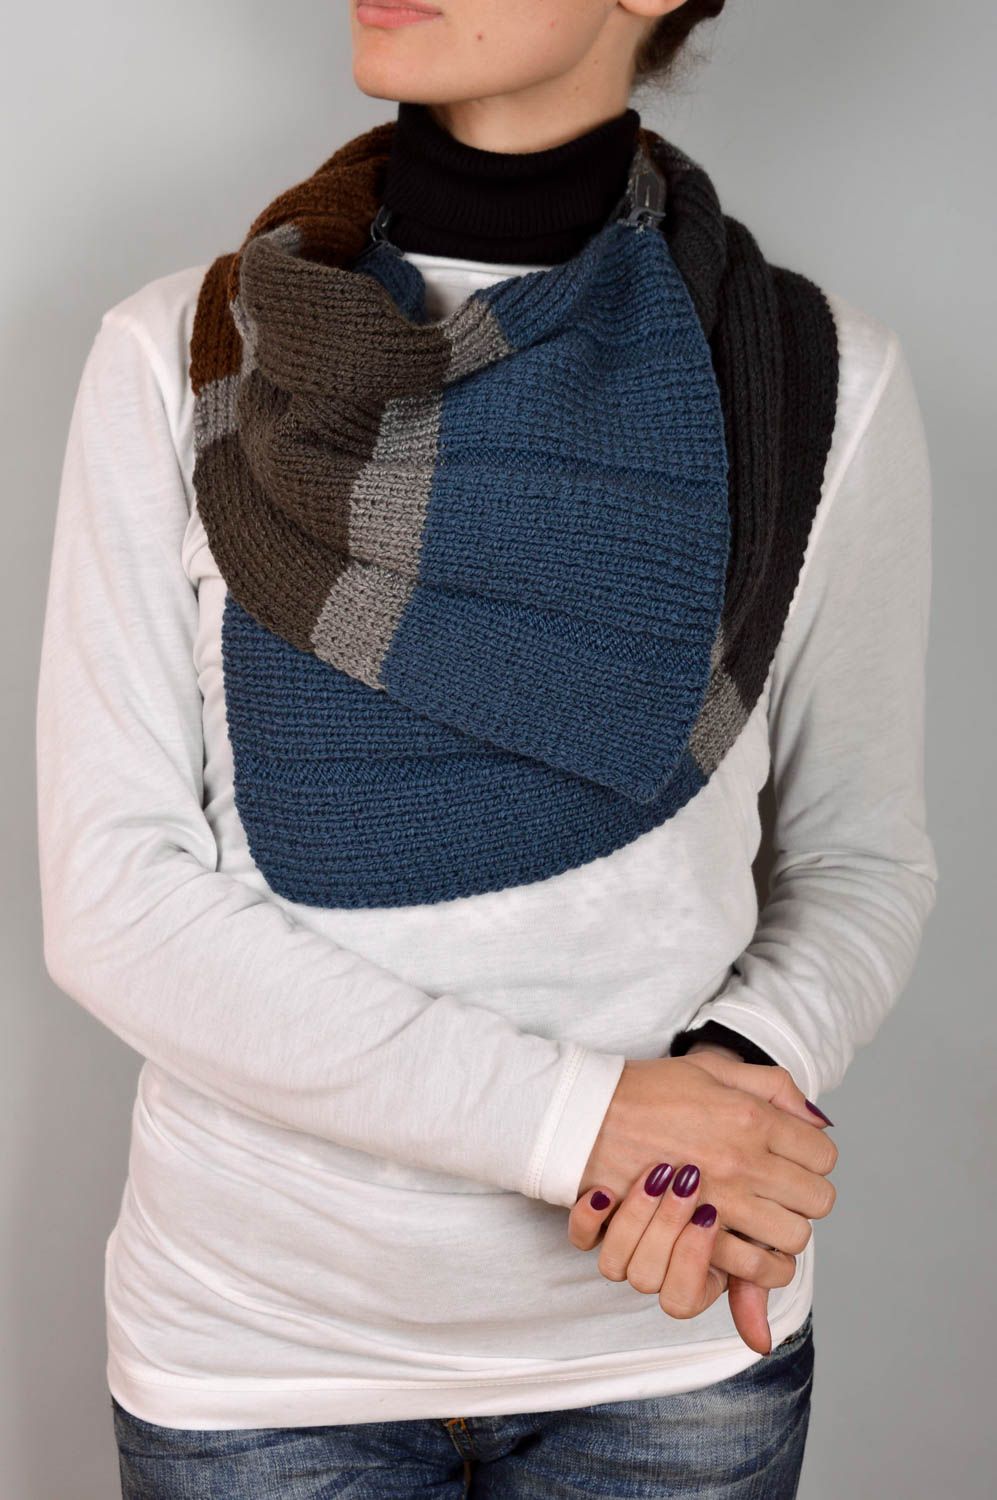 Damen Schal handgefertigt Frauen Accessoire Schal für Herren blau grau foto 4